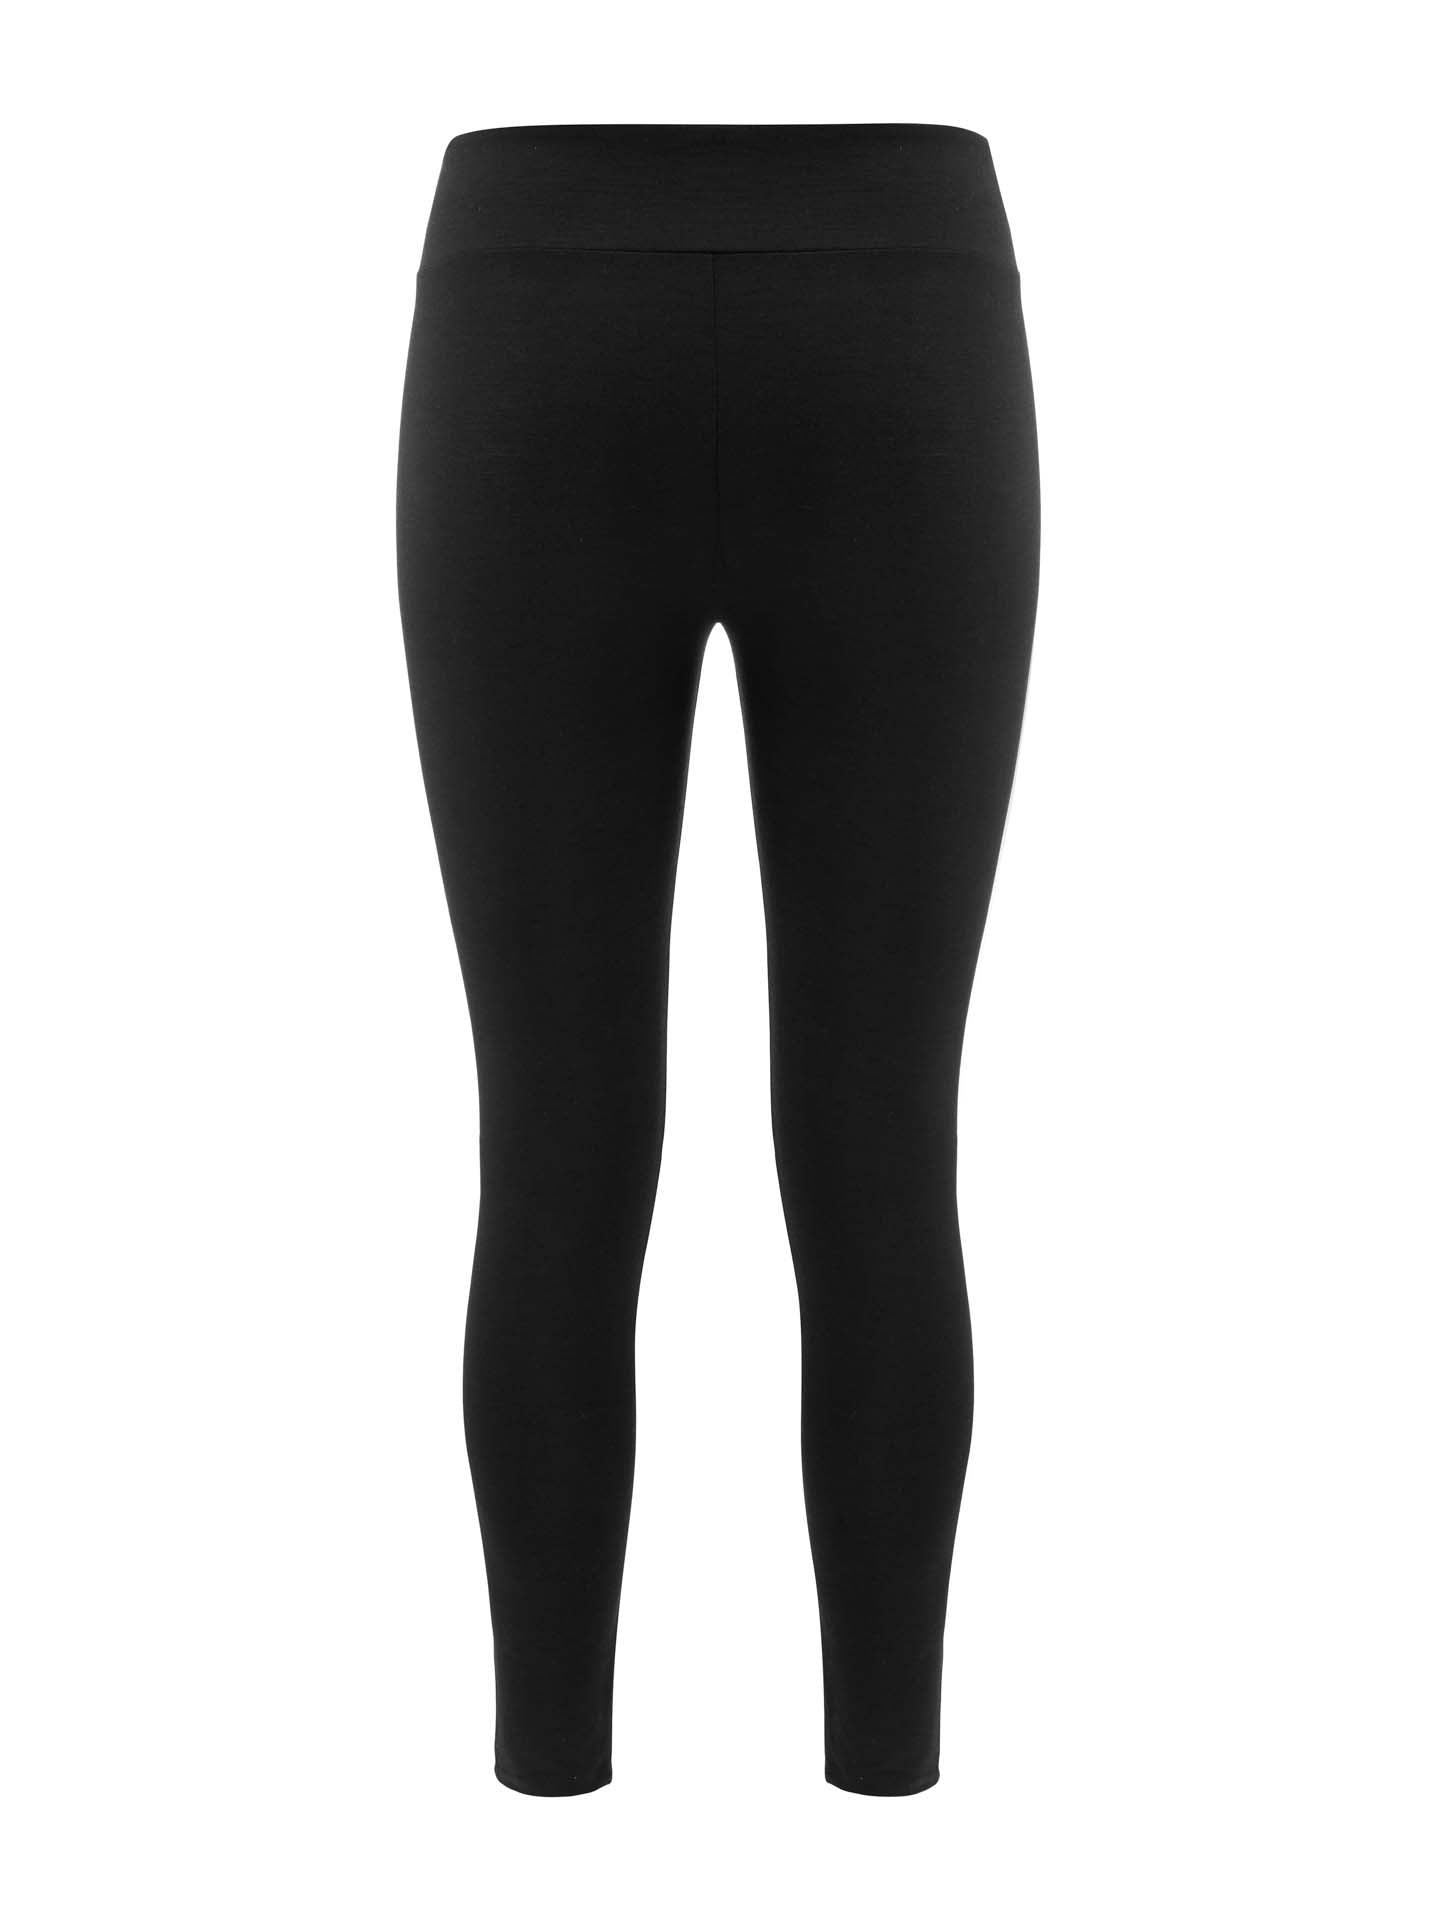 NZSALE  FIL Women's Merino Wool Leggings Thermal Underwear - Black